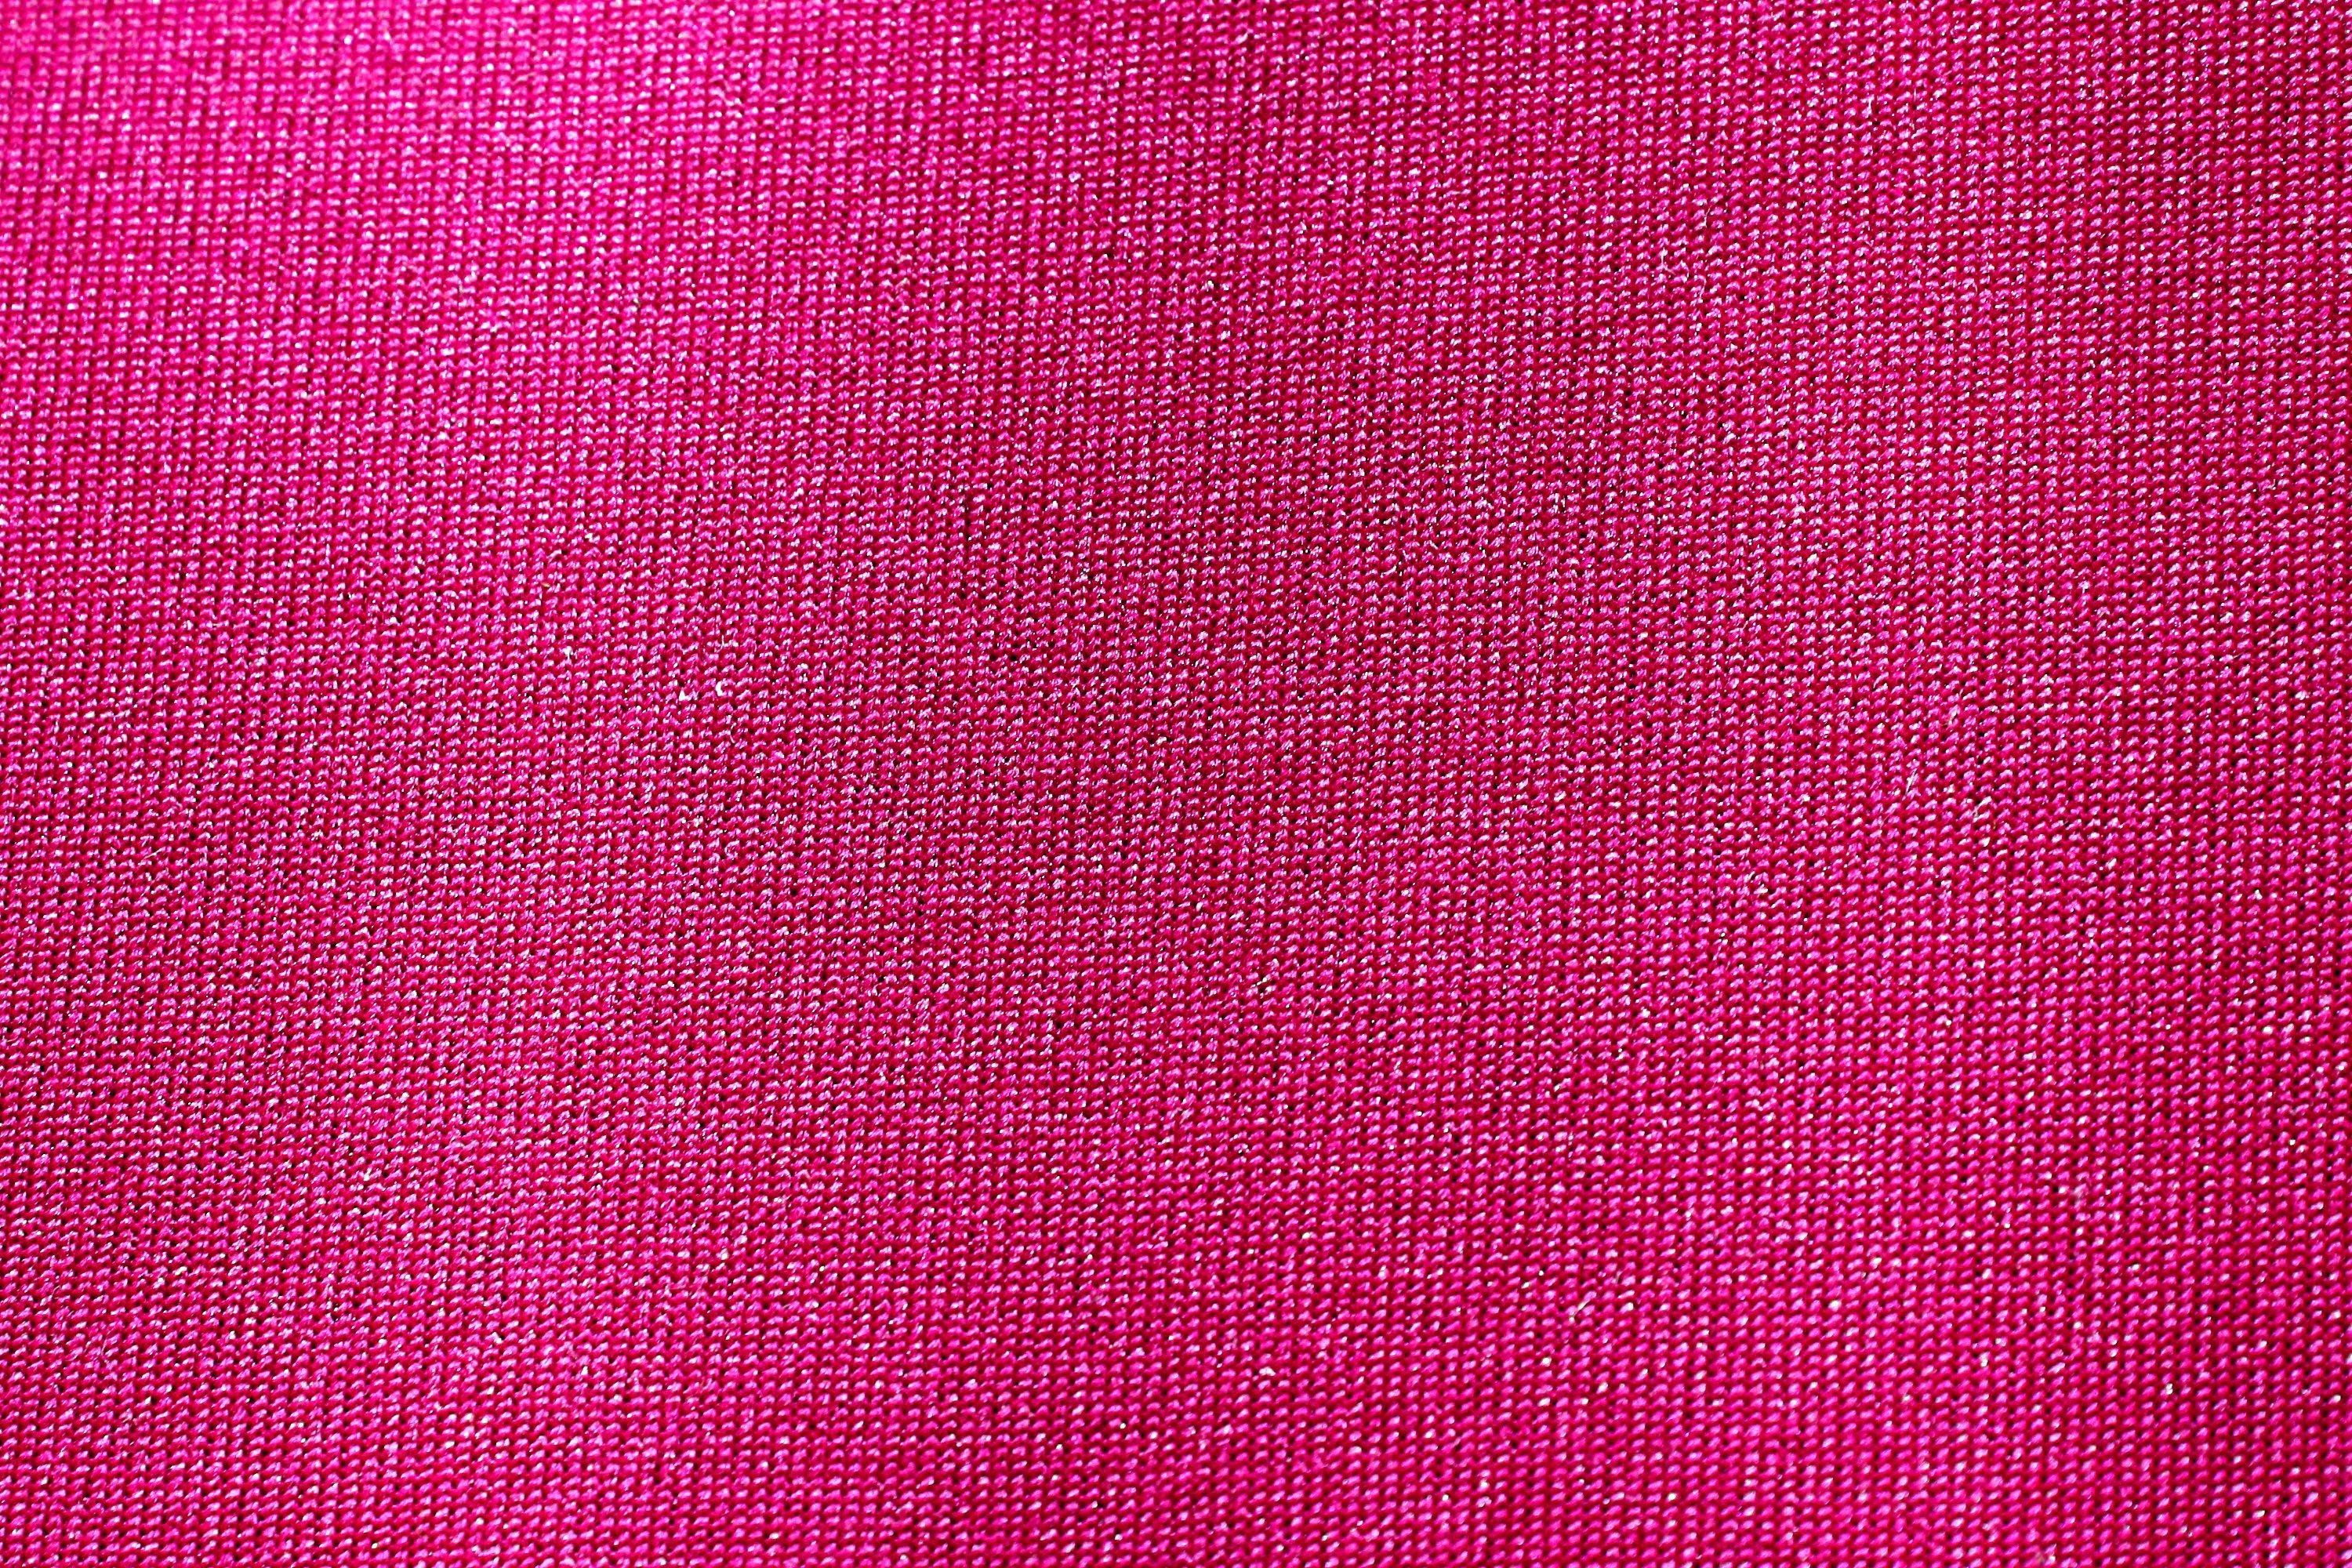 3000x2000 neon pink wallpaper #246413